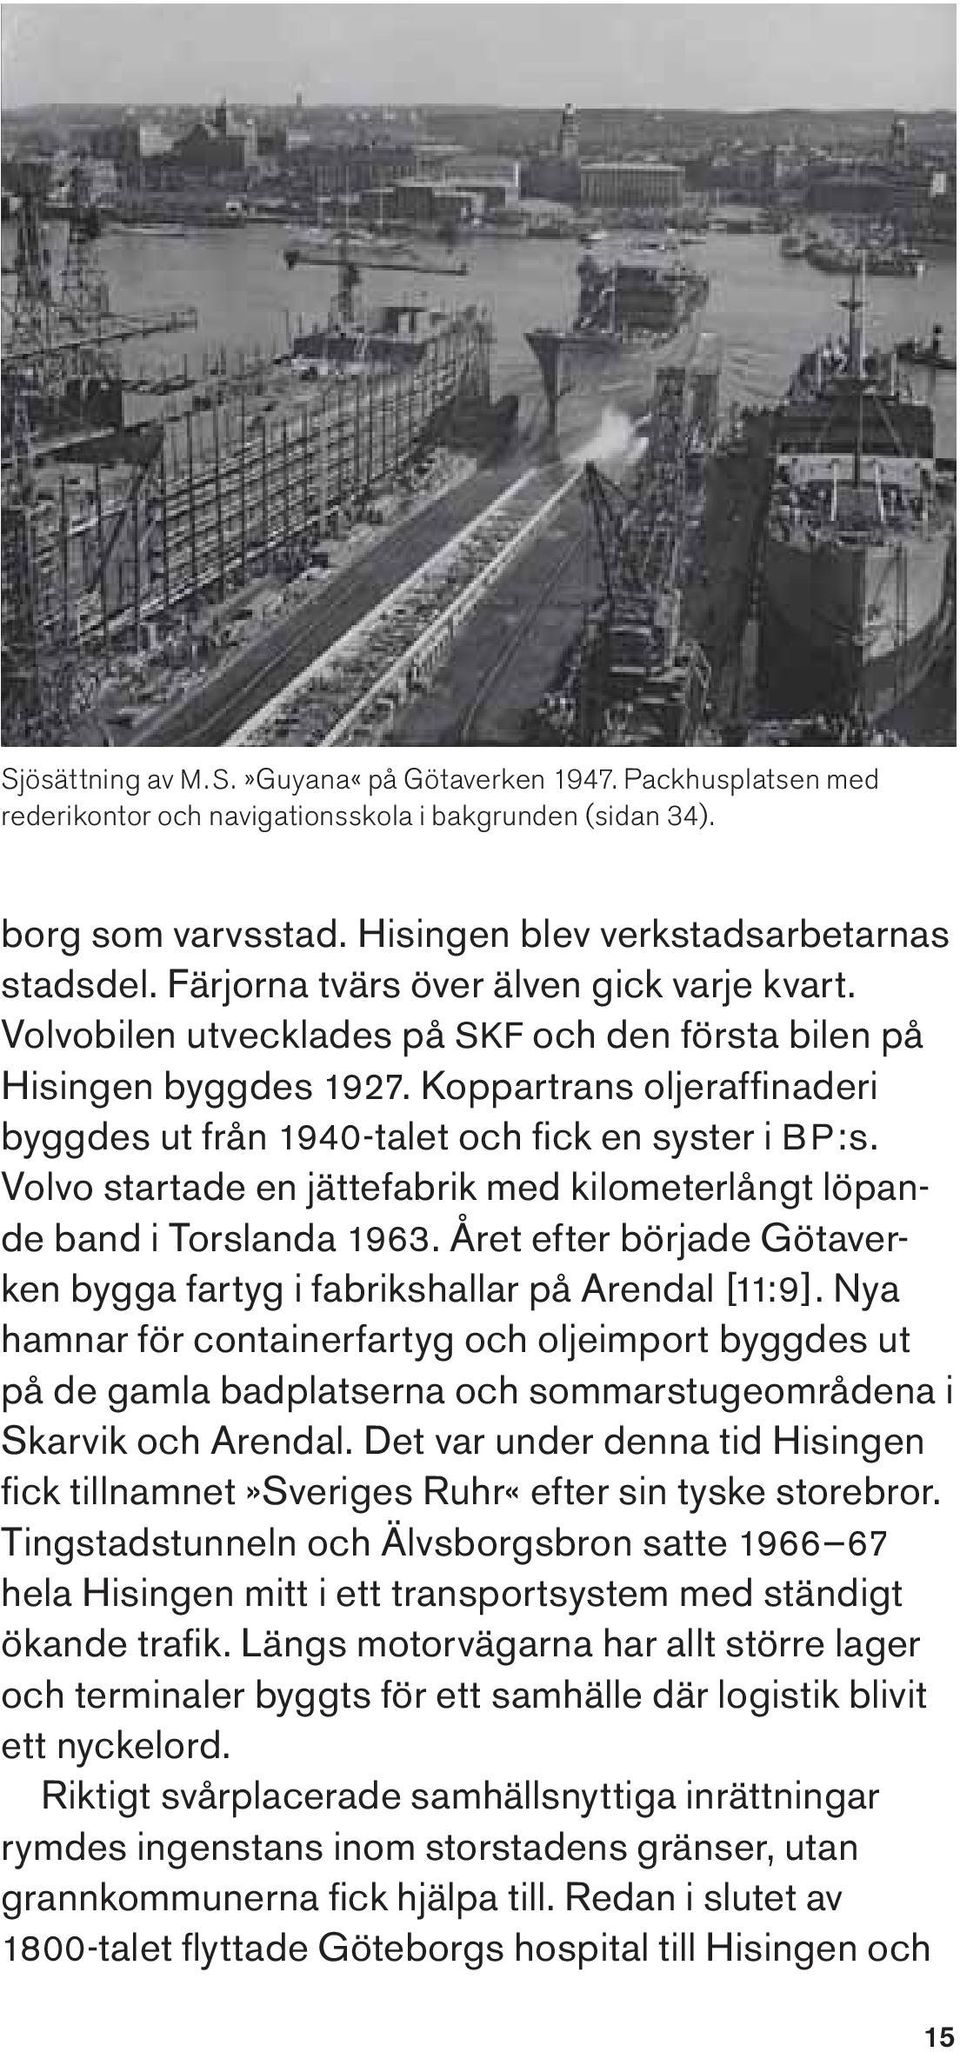 Koppartrans oljeraffi naderi byggdes ut från 1940-talet och fi ck en syster i BP:s. Volvo startade en jättefabrik med kilometerlångt löpande band i Torslanda 1963.